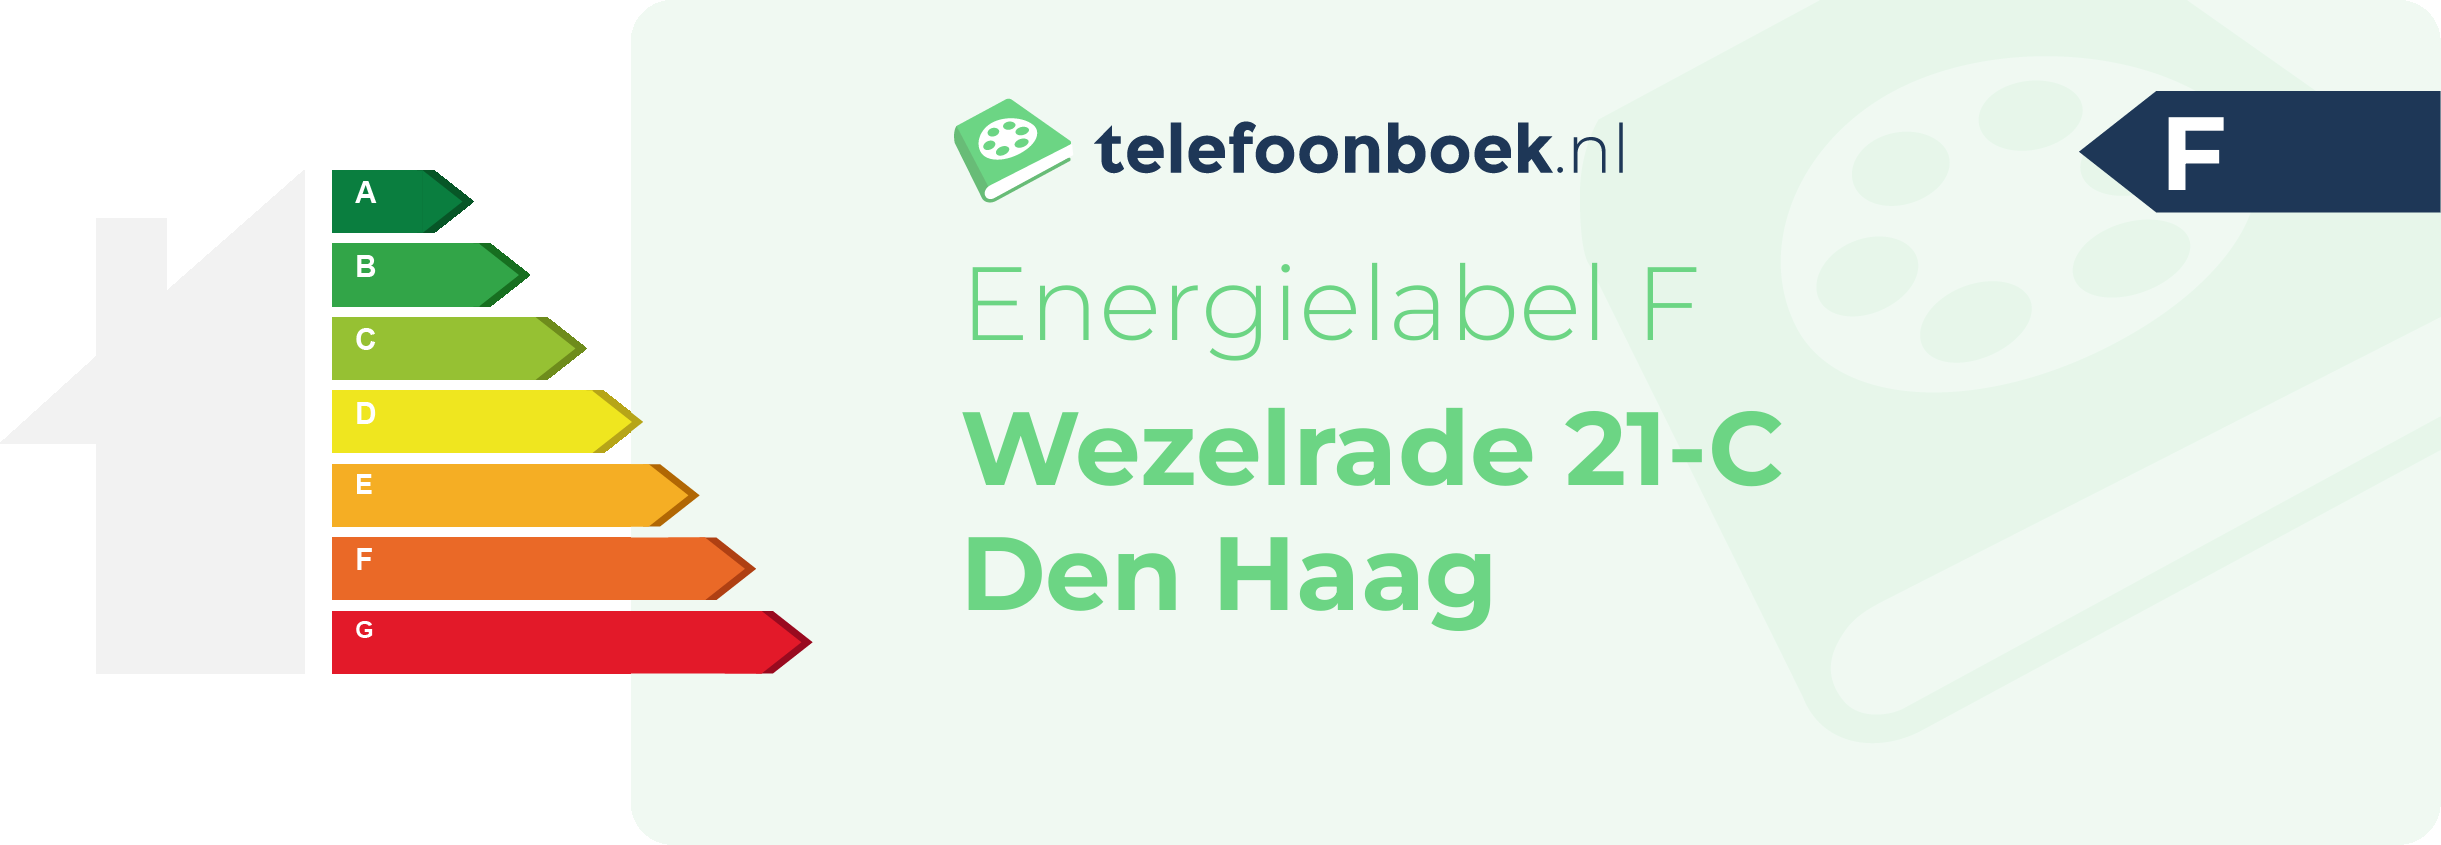 Energielabel Wezelrade 21-C Den Haag